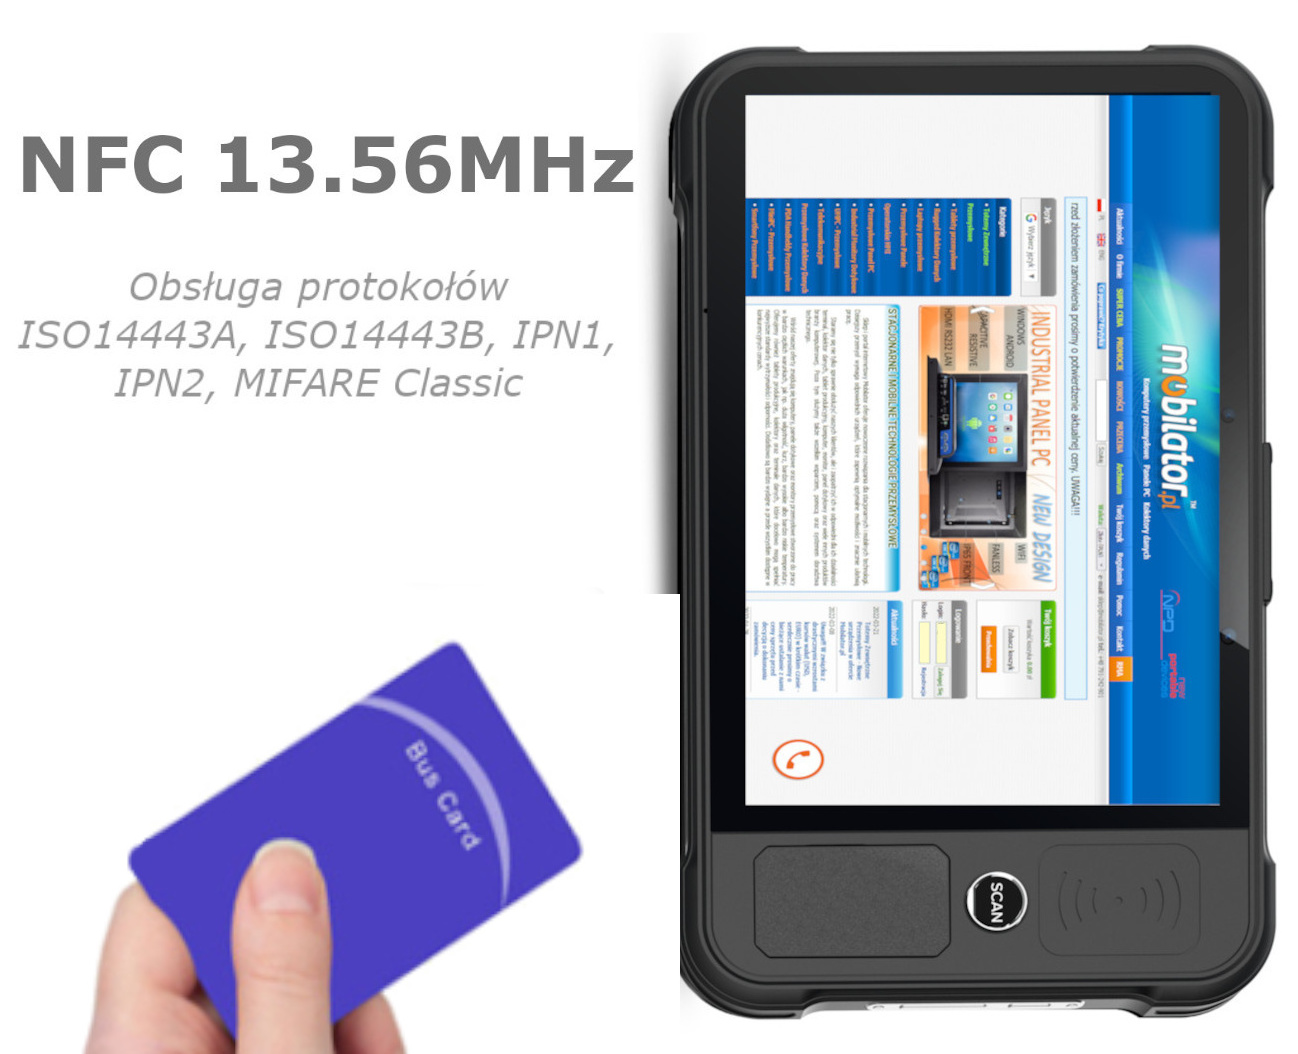 NFC Chainway P80-PE v.2 obsuga protokow